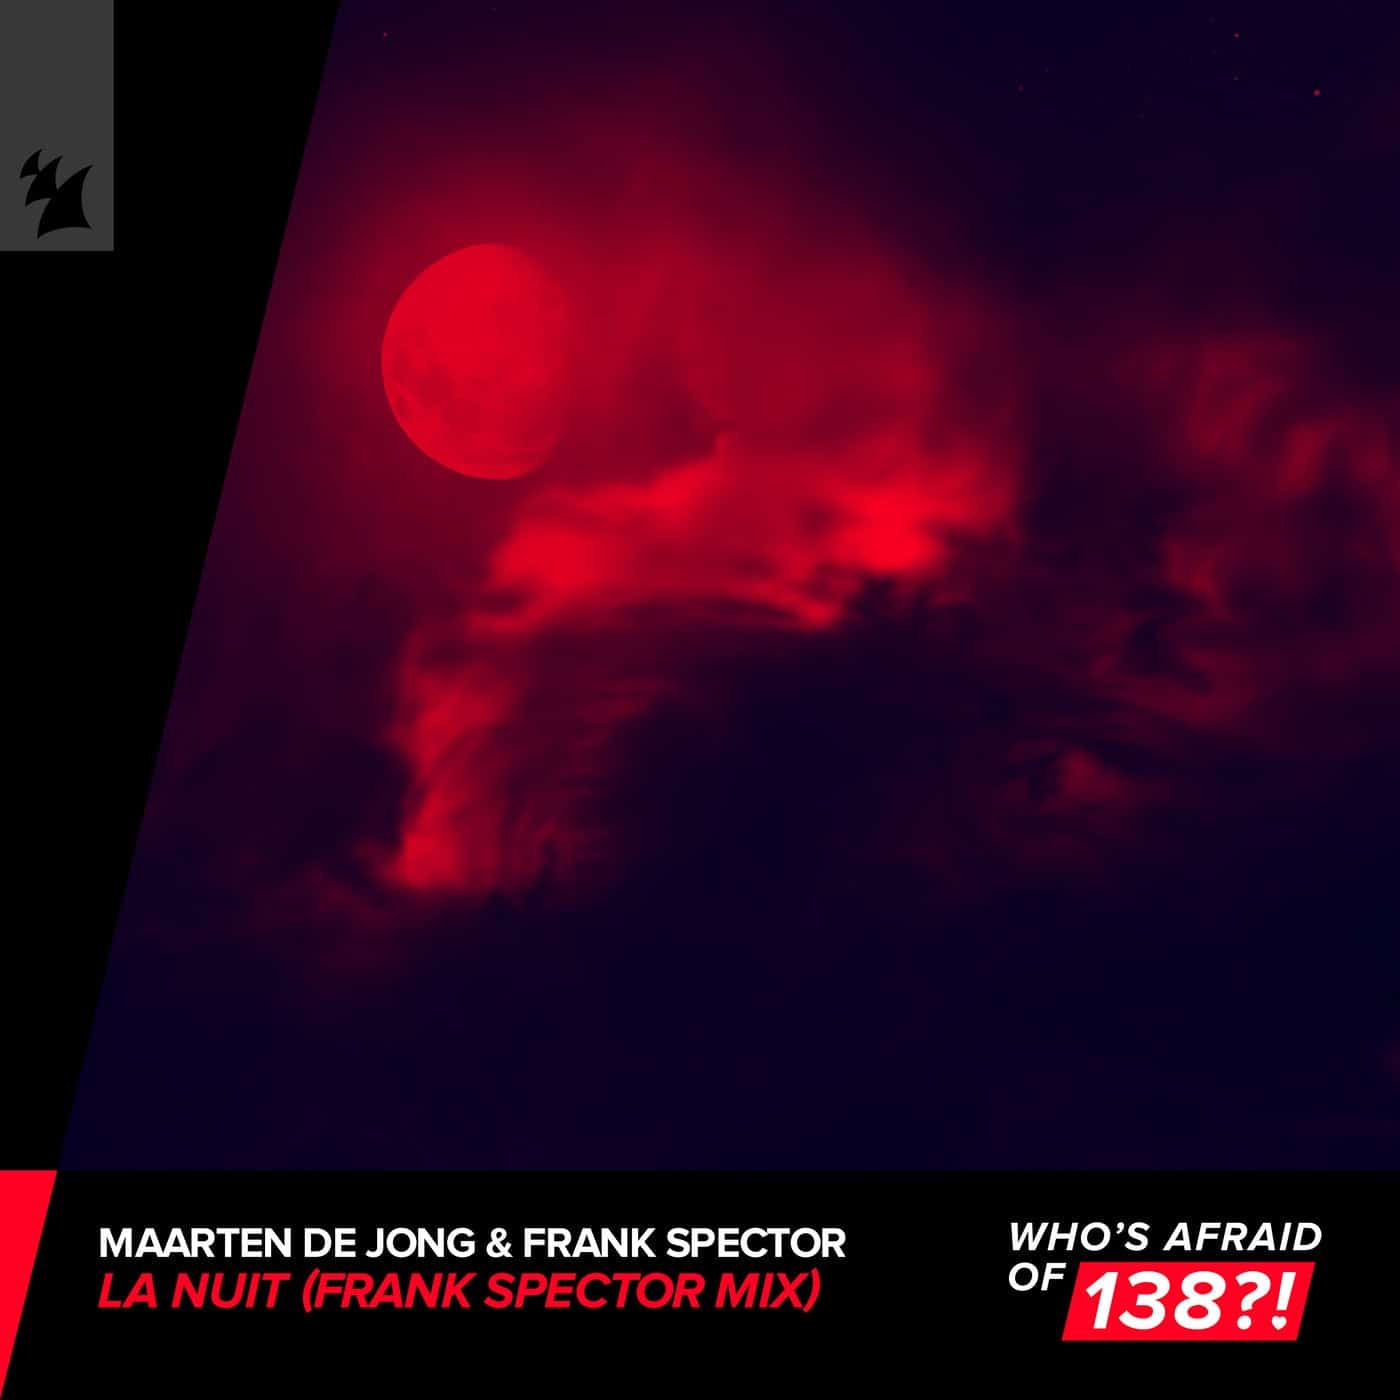 Download Maarten De Jong, Frank Spector - La Nuit - Frank Spector Mix